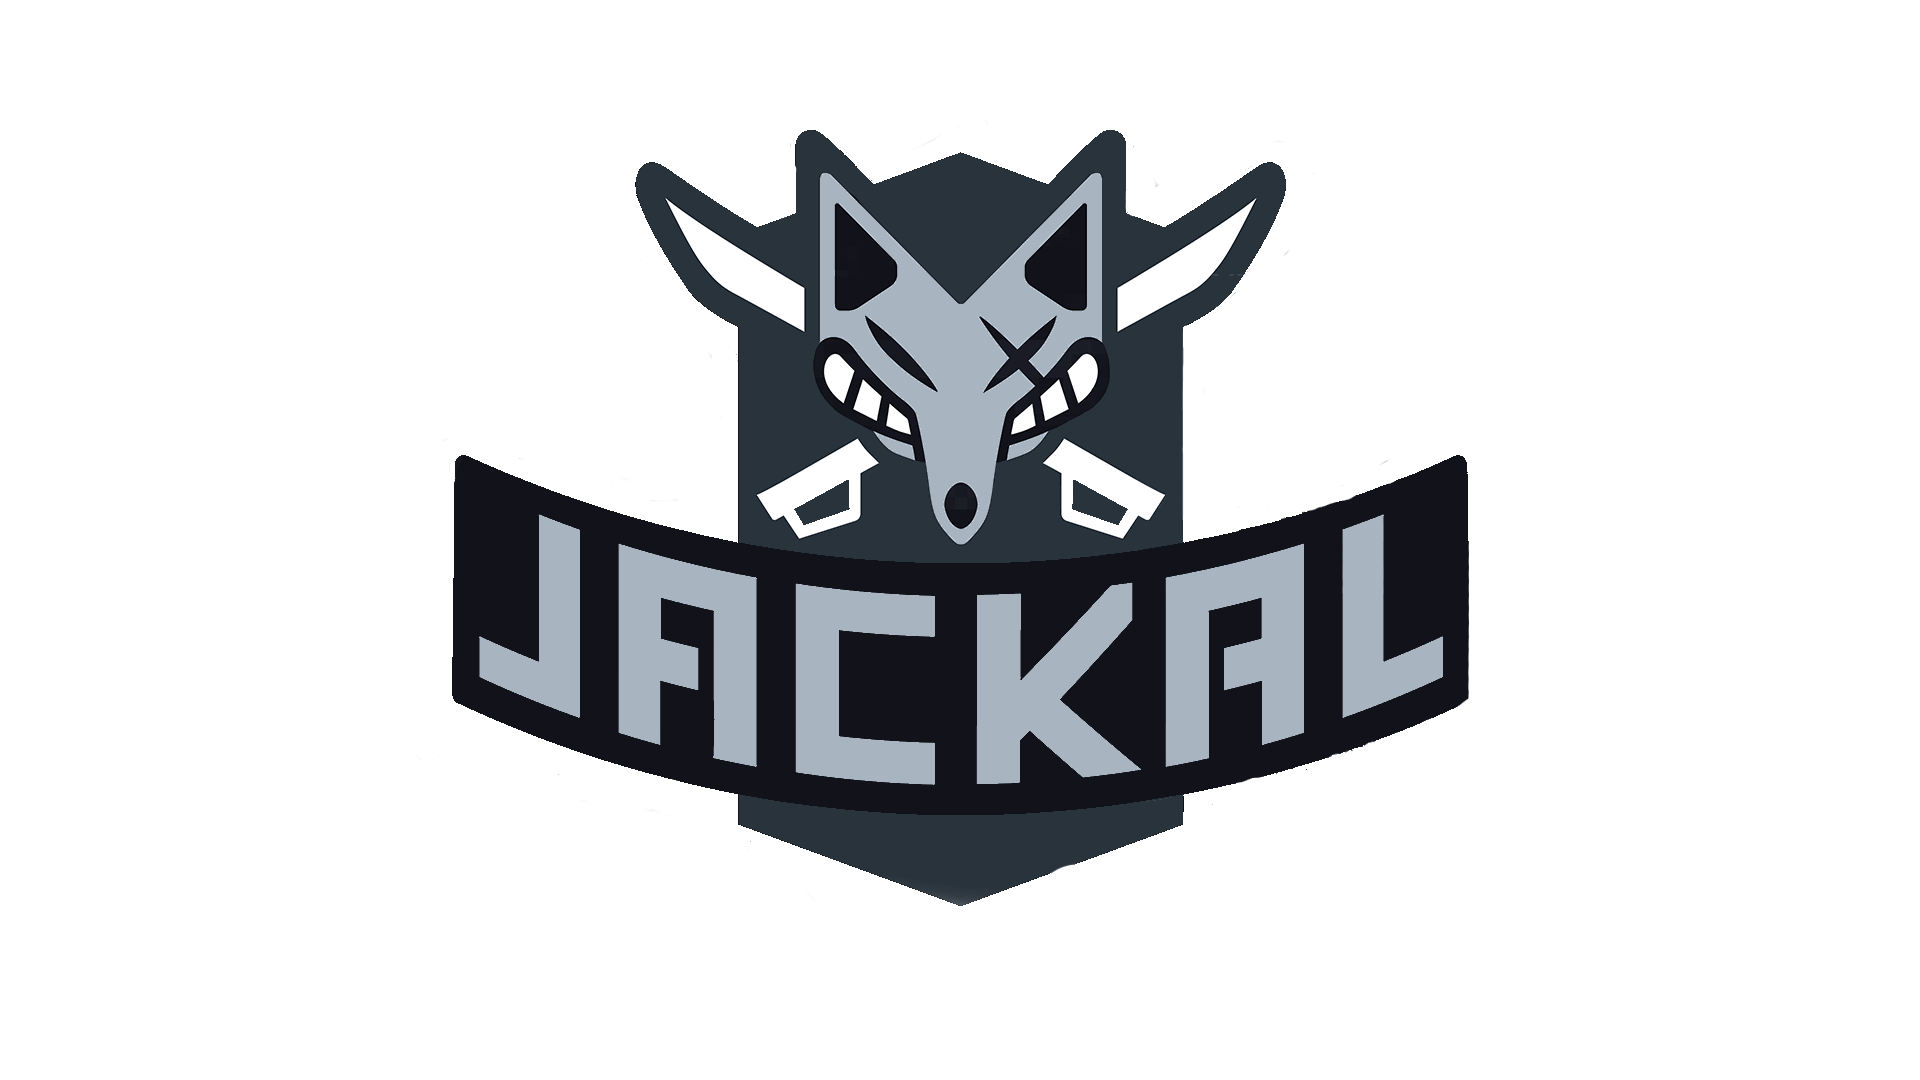 Jackal Logo - Transparent Background Jackal Logo, needed it for a wallpaper